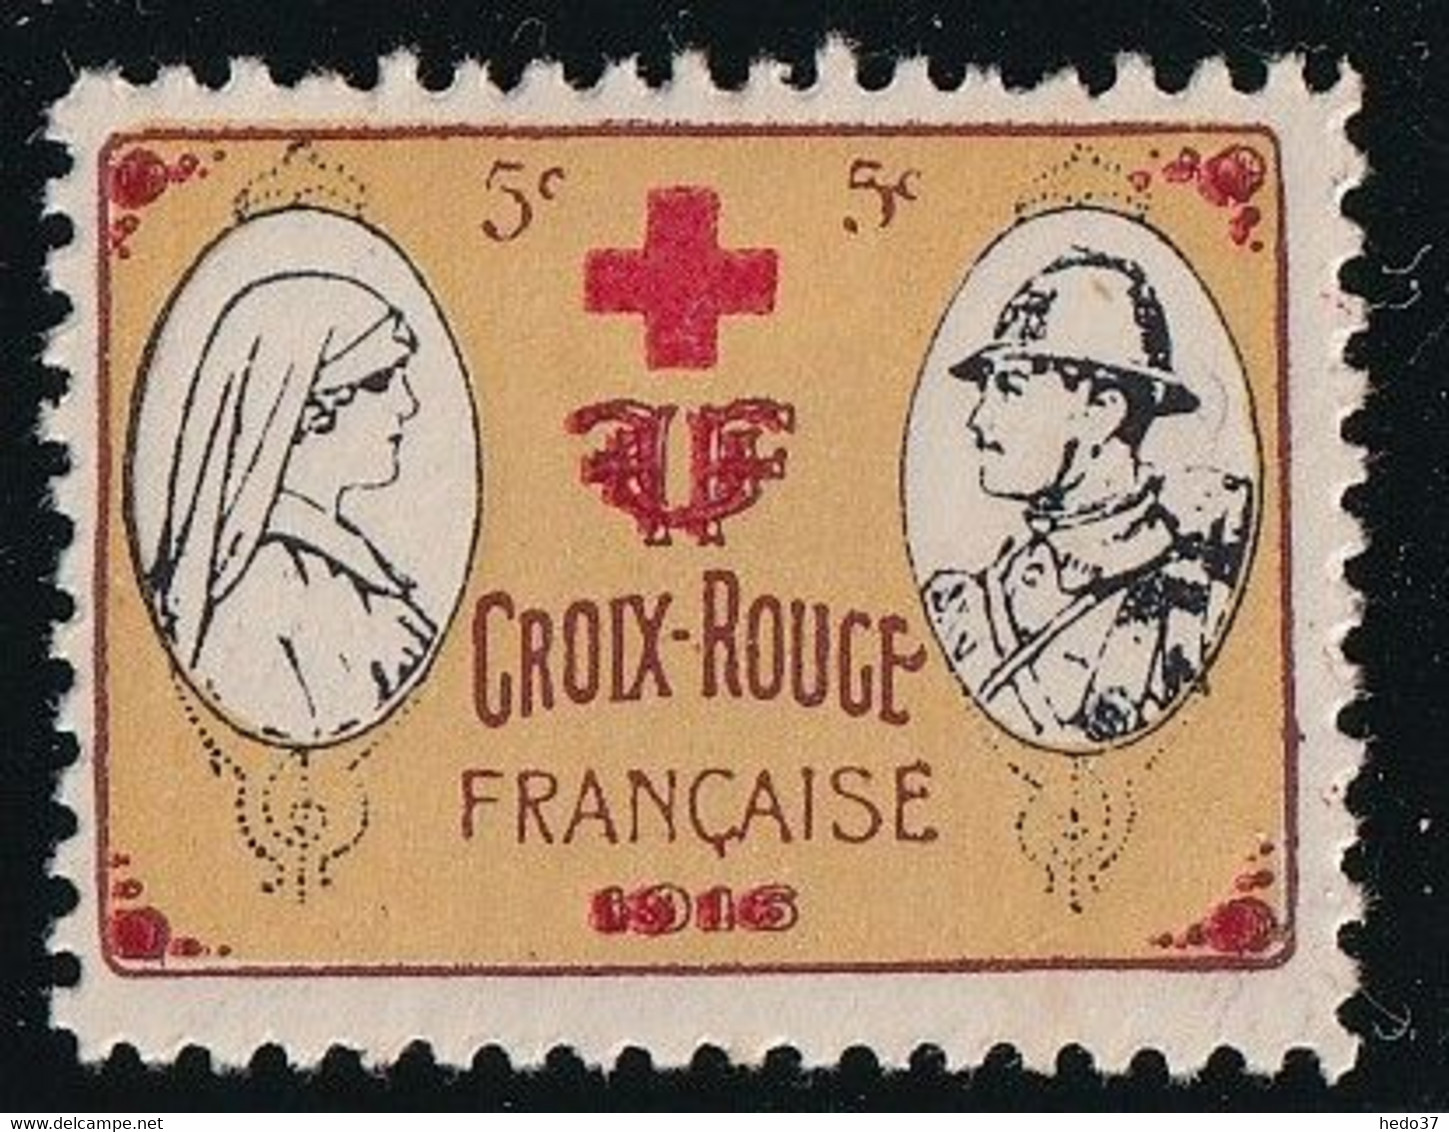 France Vignettes Croix Rouge - Neuf * Avec Charnière - TB - Croce Rossa